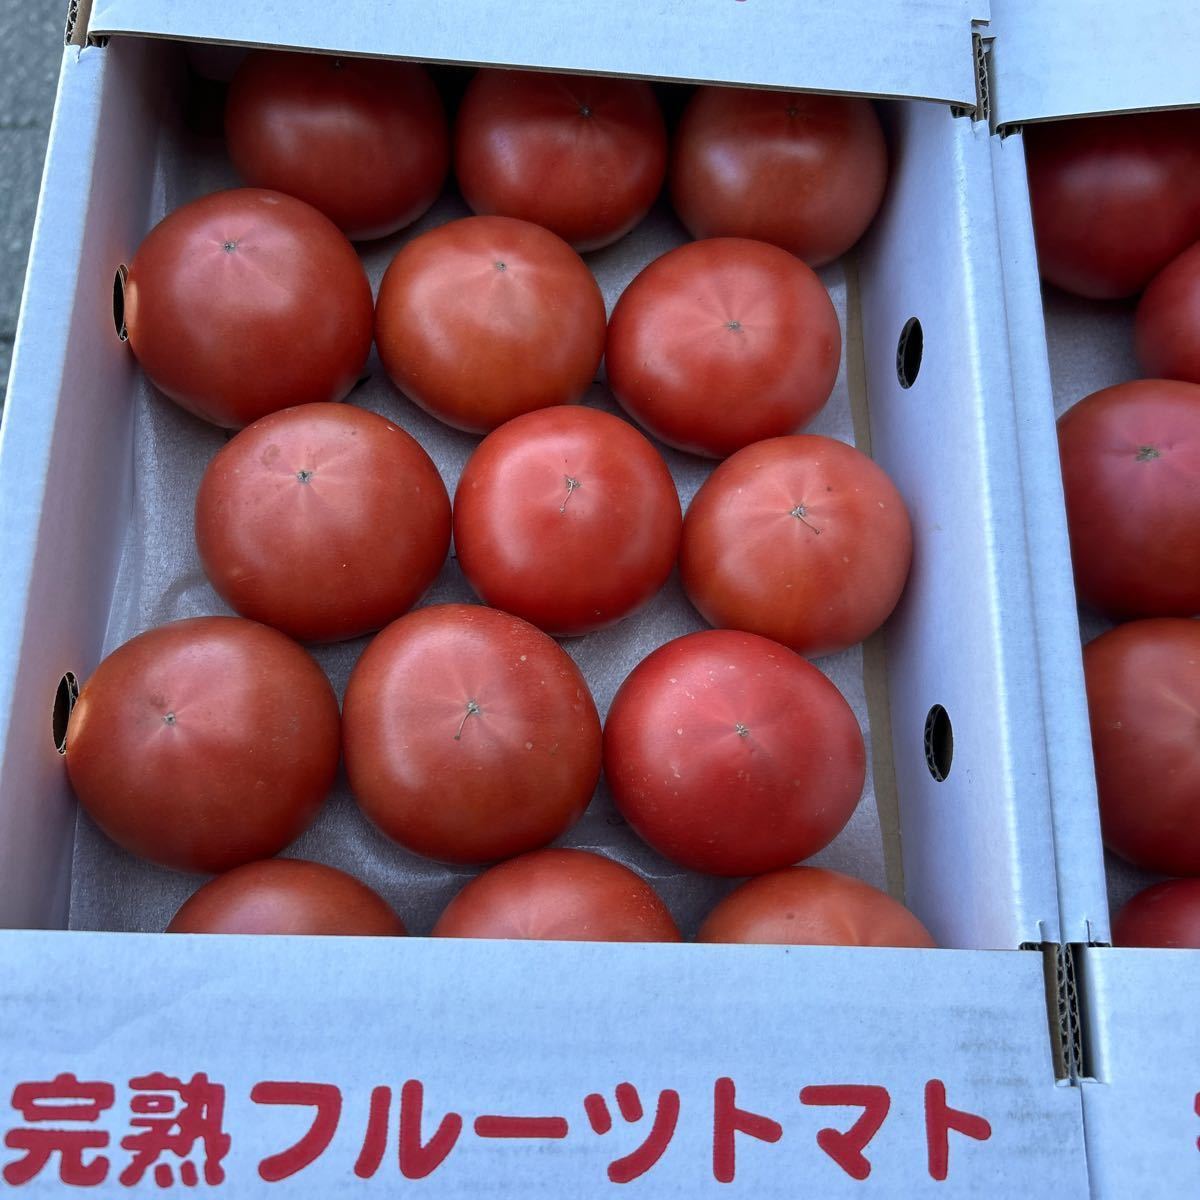 送料込み 熊本産 塩トマト 秀品 2Lサイズ 1箱 2/19発送予定 箱込み約1.5キロ_画像3